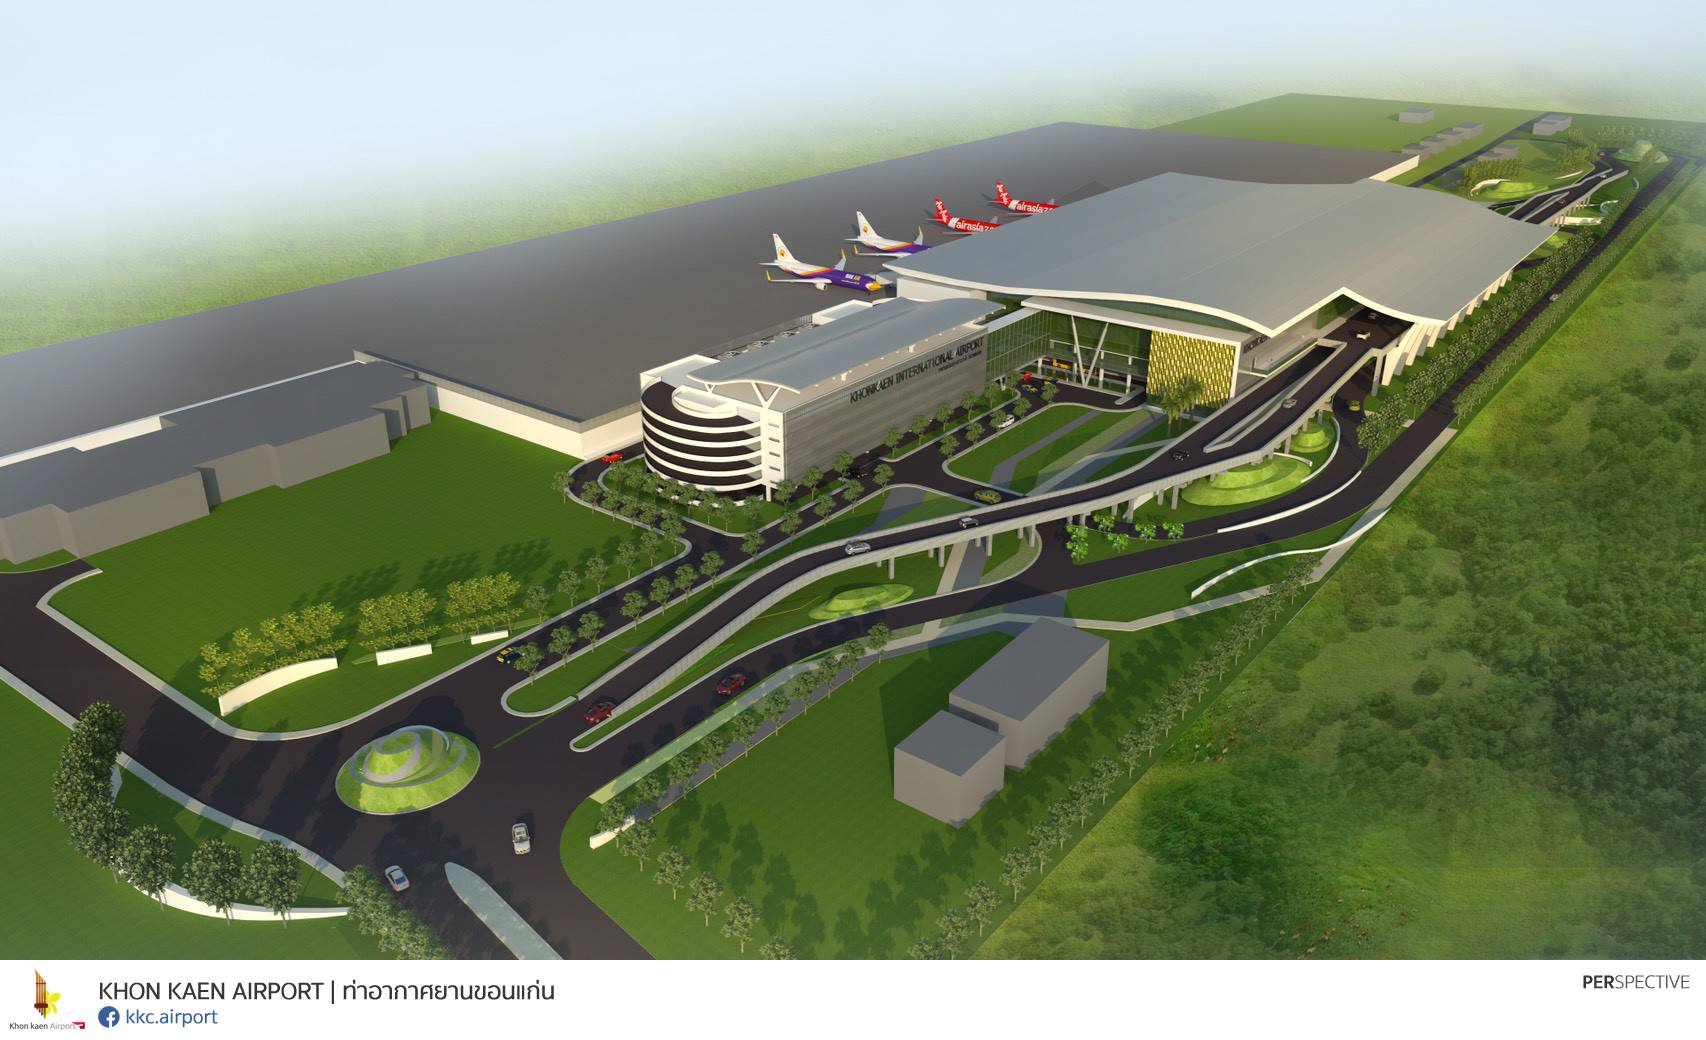 ทย.โชว์ก่อสร้างสนามบินขอนแก่น คืบหน้า 81% ตั้งเป้าแล้วเสร็จต้นปี'65 รับผู้โดยสาร 5 ล้านคน/ปี